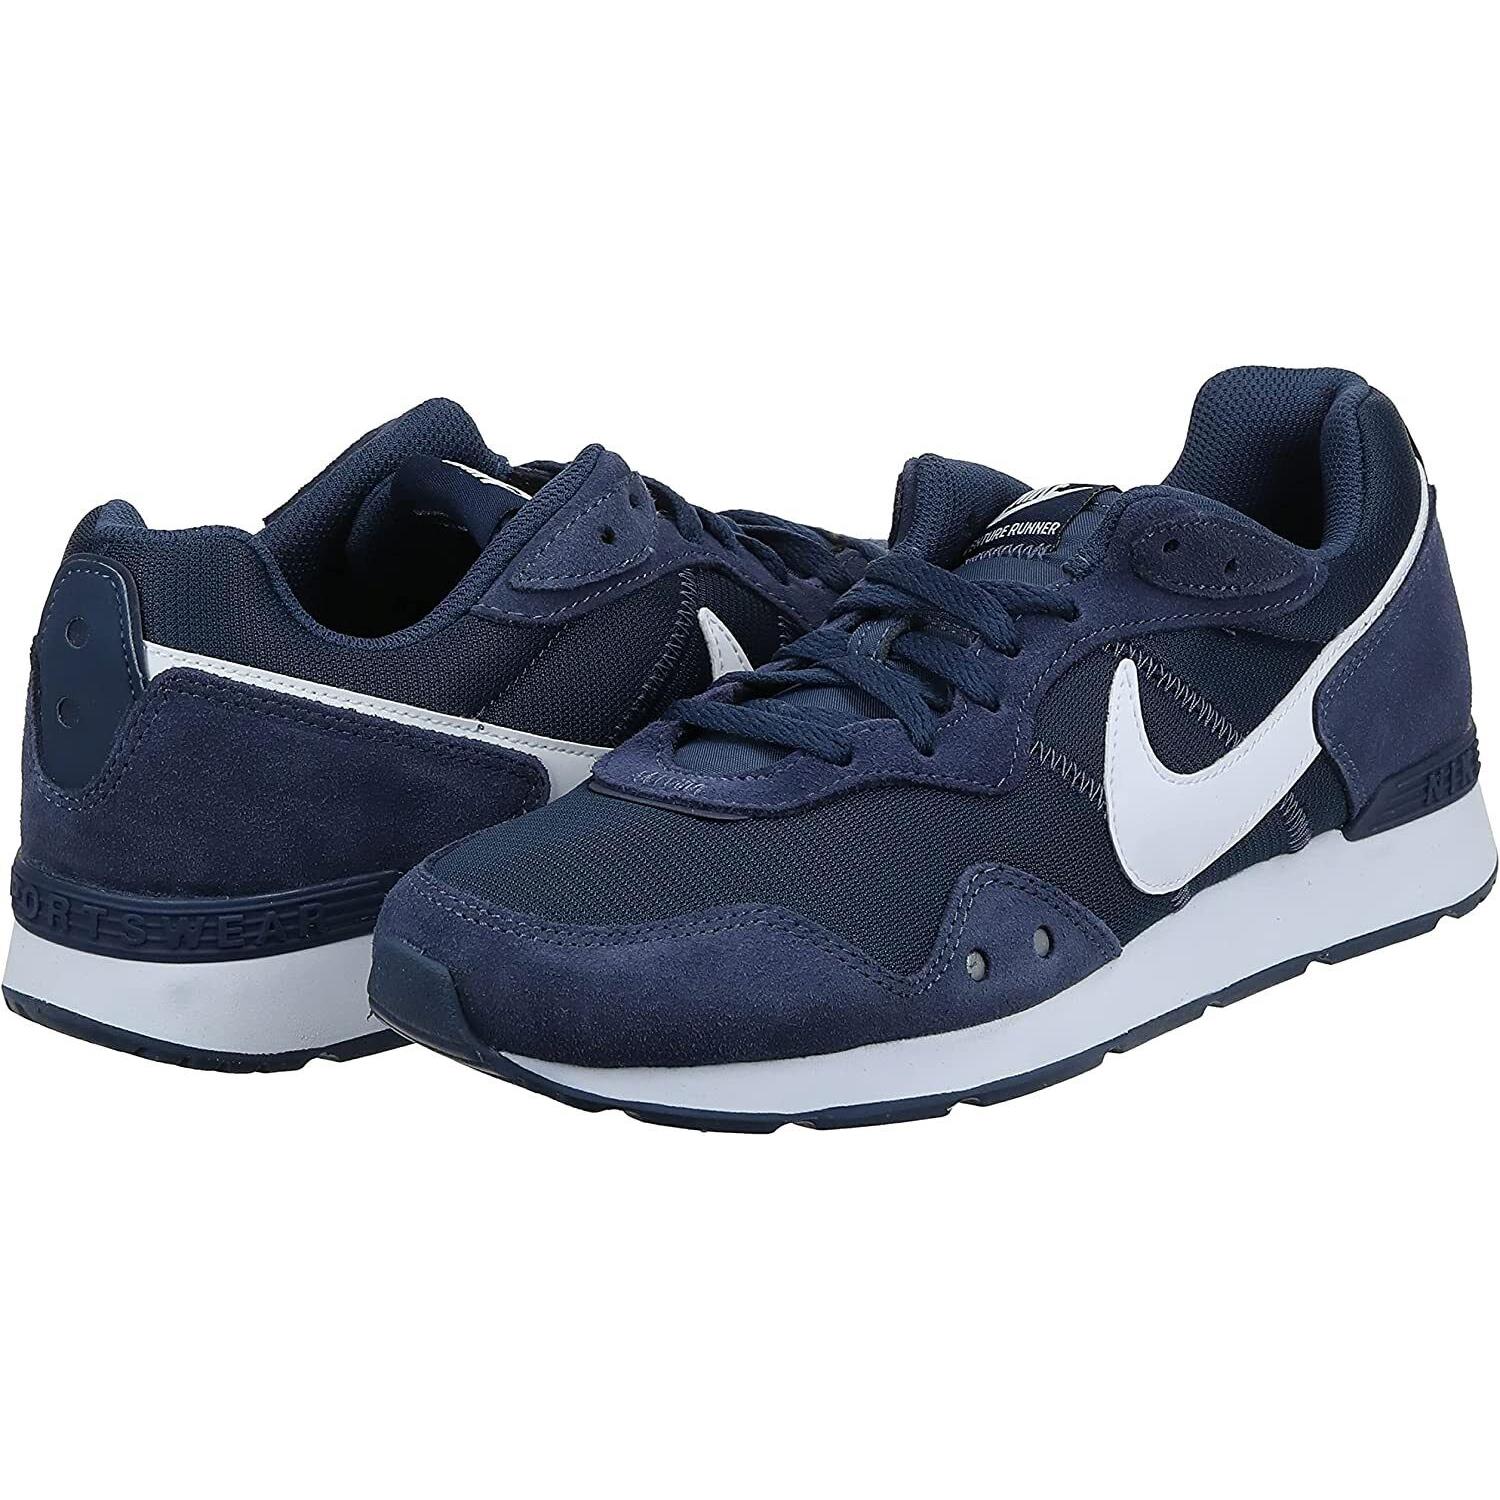 Nike Venture Runner Mens Running Shoes CK2944 400 Navy Blue White Sizes 7-10 - Blue